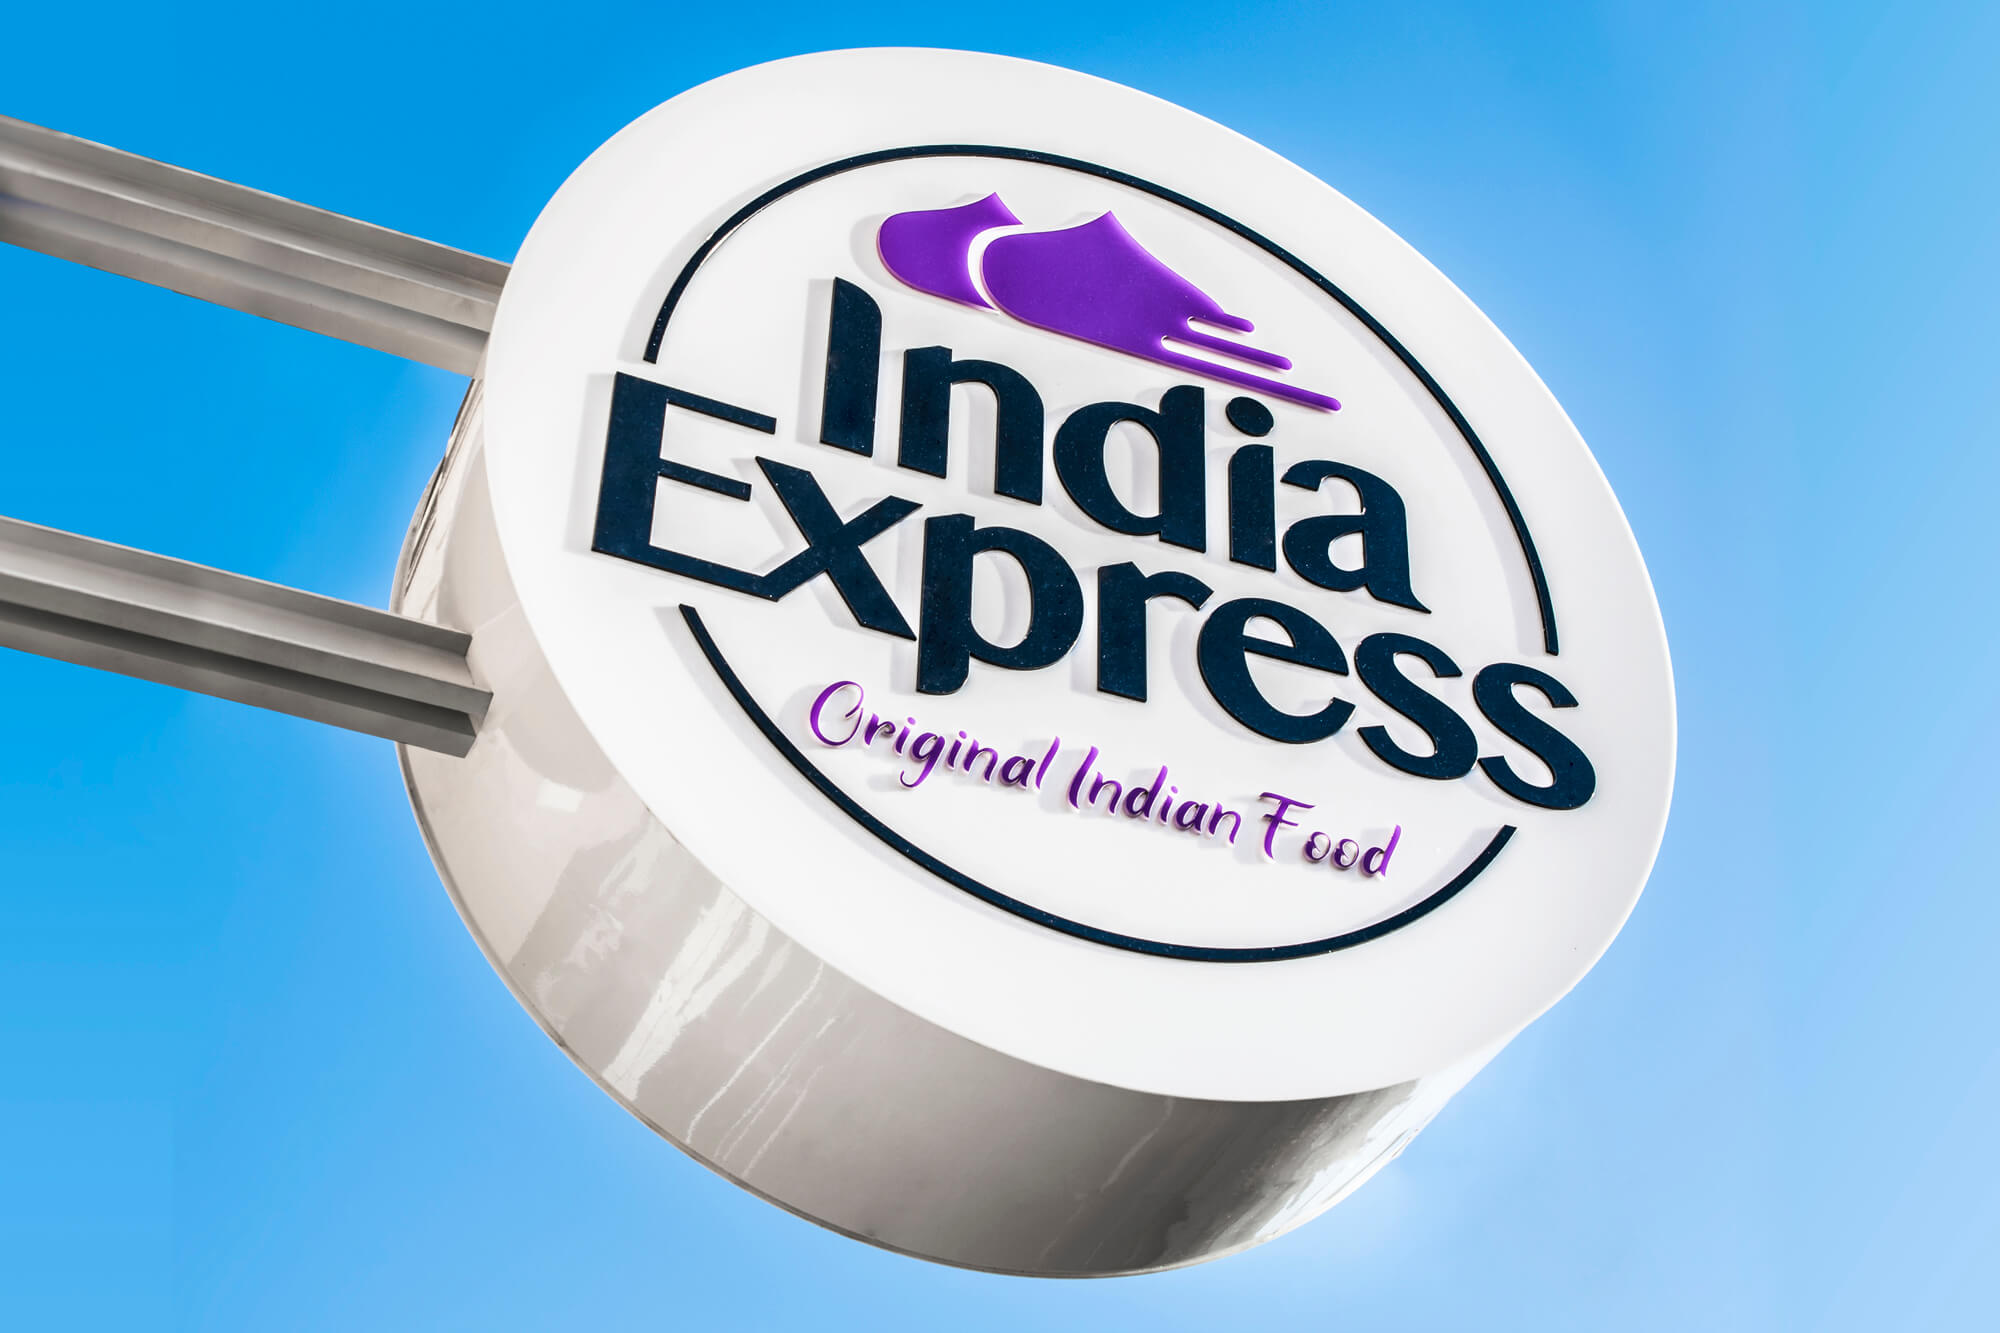 India Express - India Express - logo della società, semaforo pubblicitario appeso accanto all'ingresso